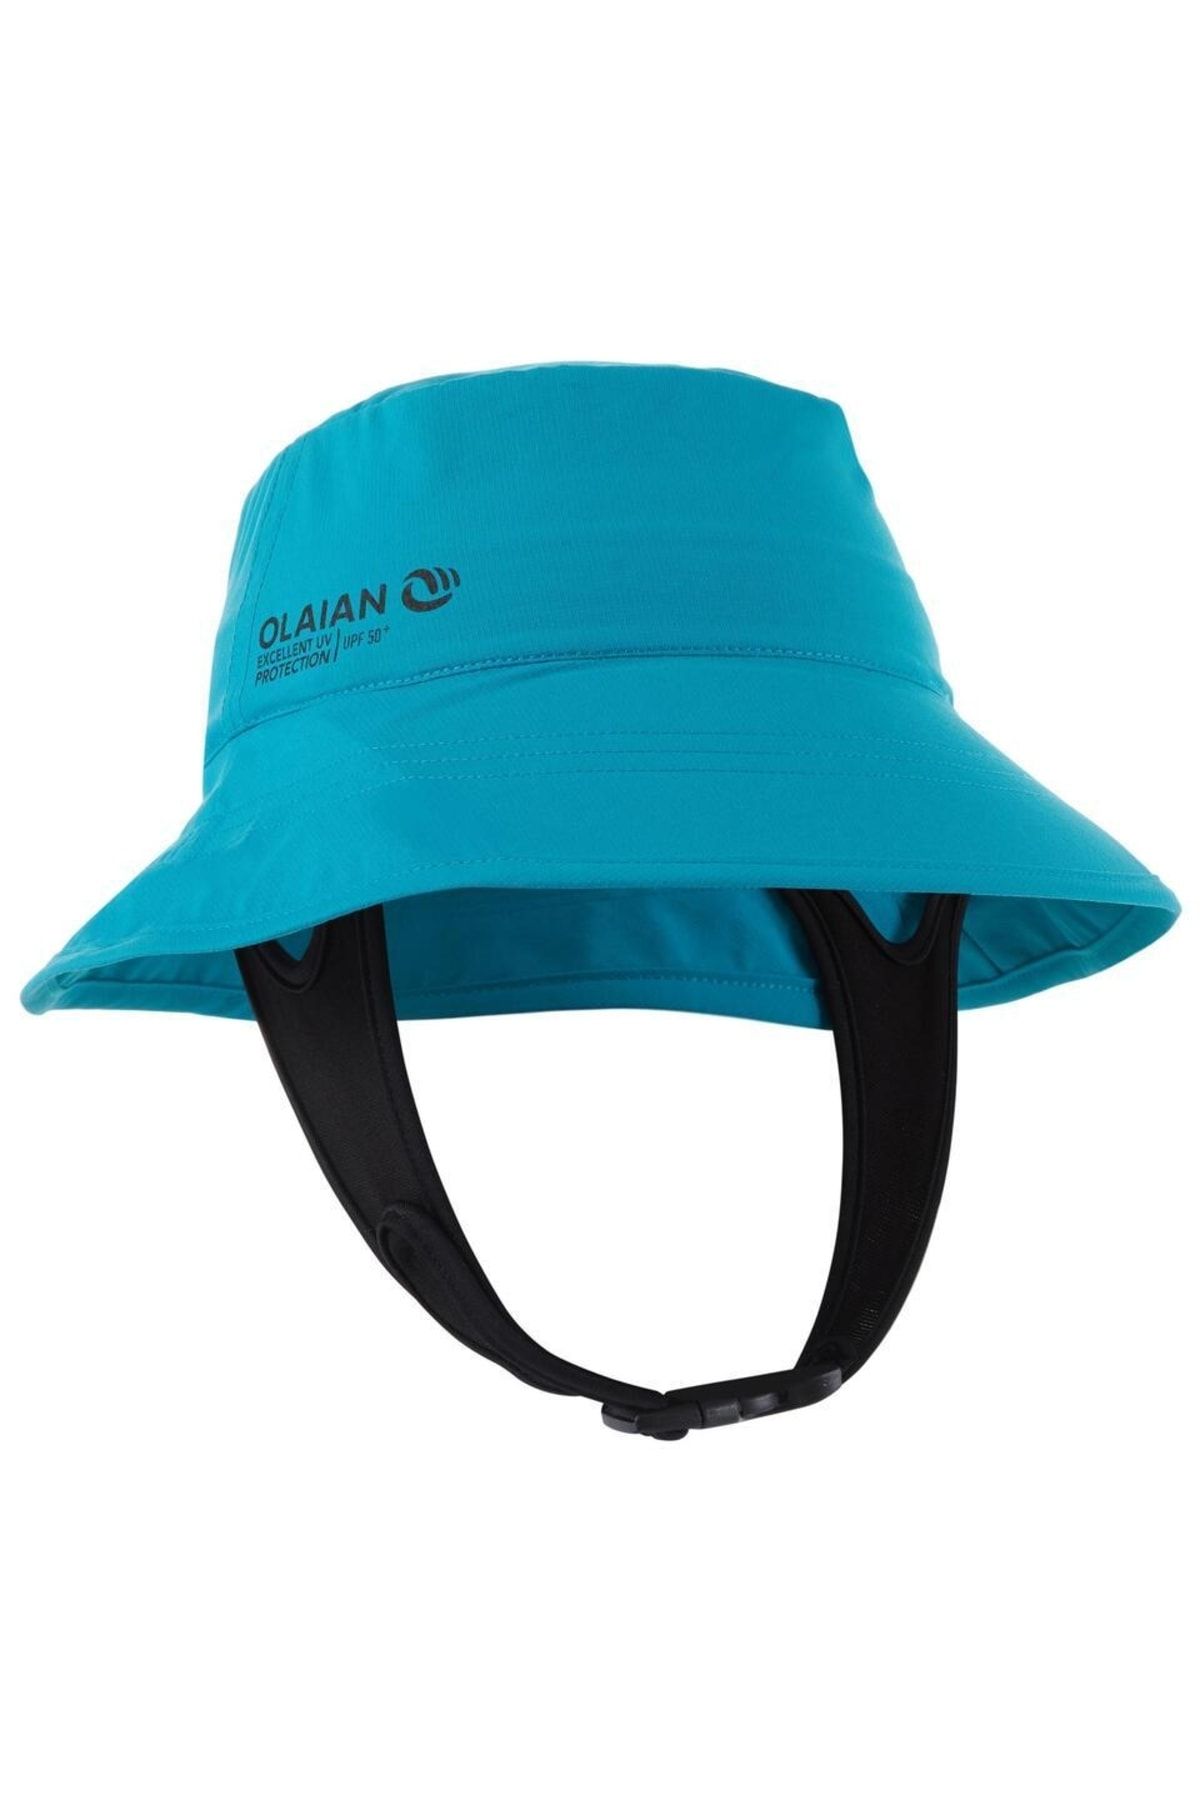 Decathlon - Uv Korumalı Çocuk Şapkası Uv Korumalı Şapka Mavi